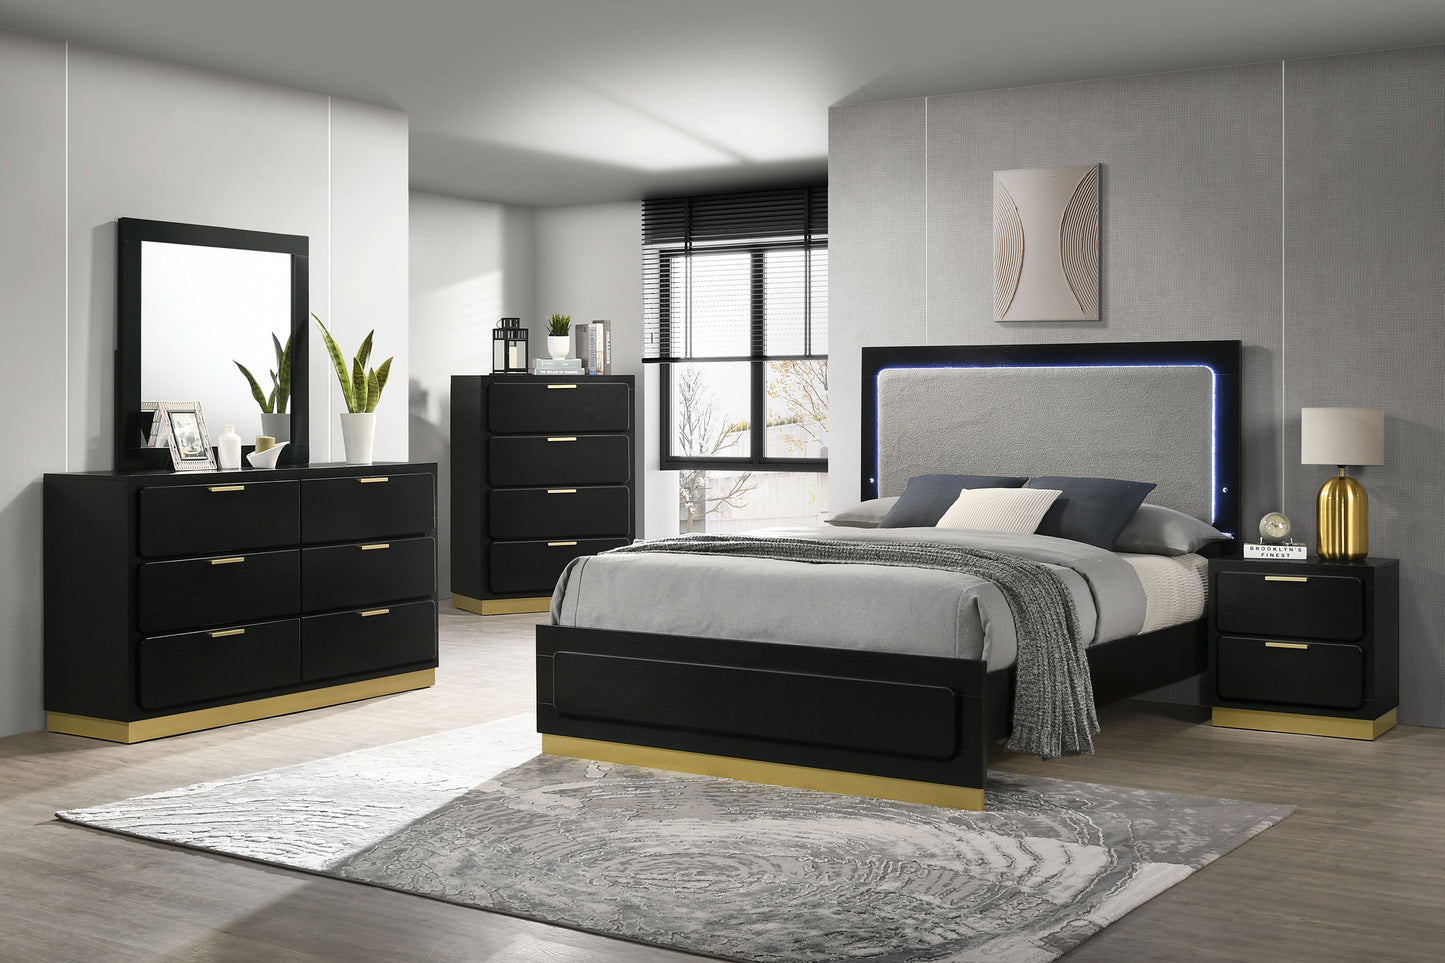 Caraway 5-piece Queen Bedroom Set Black